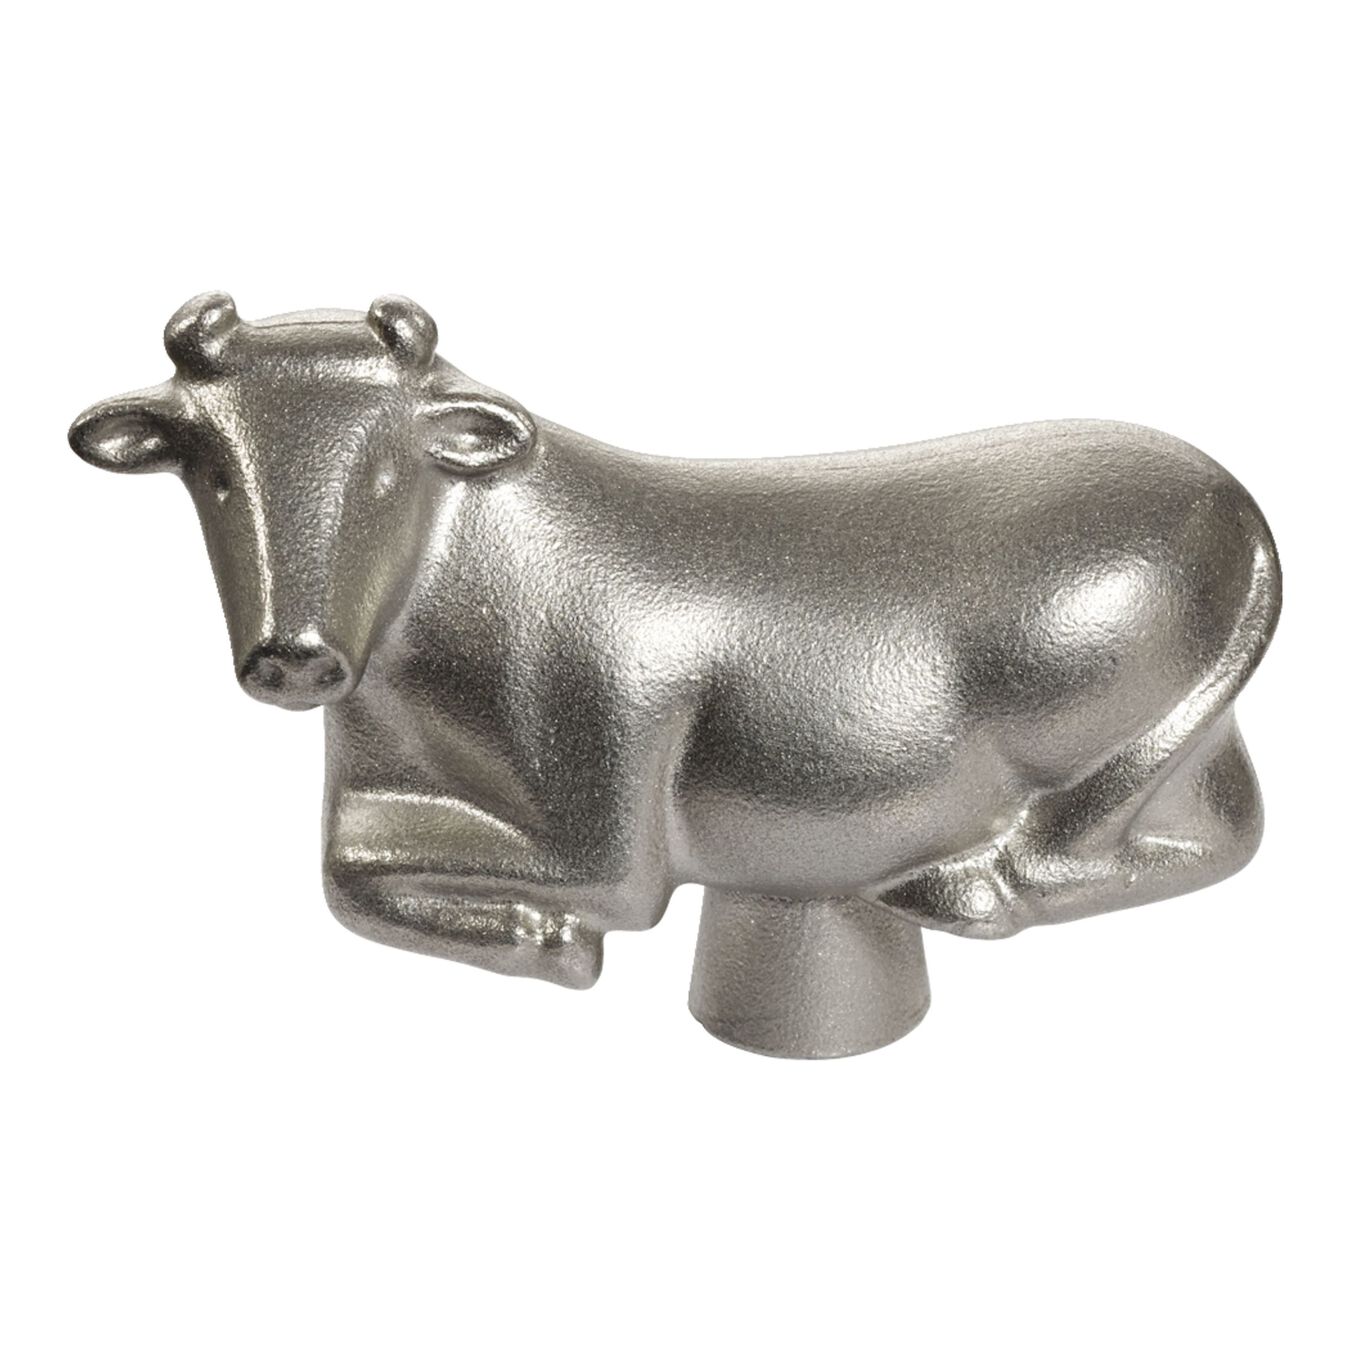 Pomello mucca - 7 cm, acciaio inox,,large 1